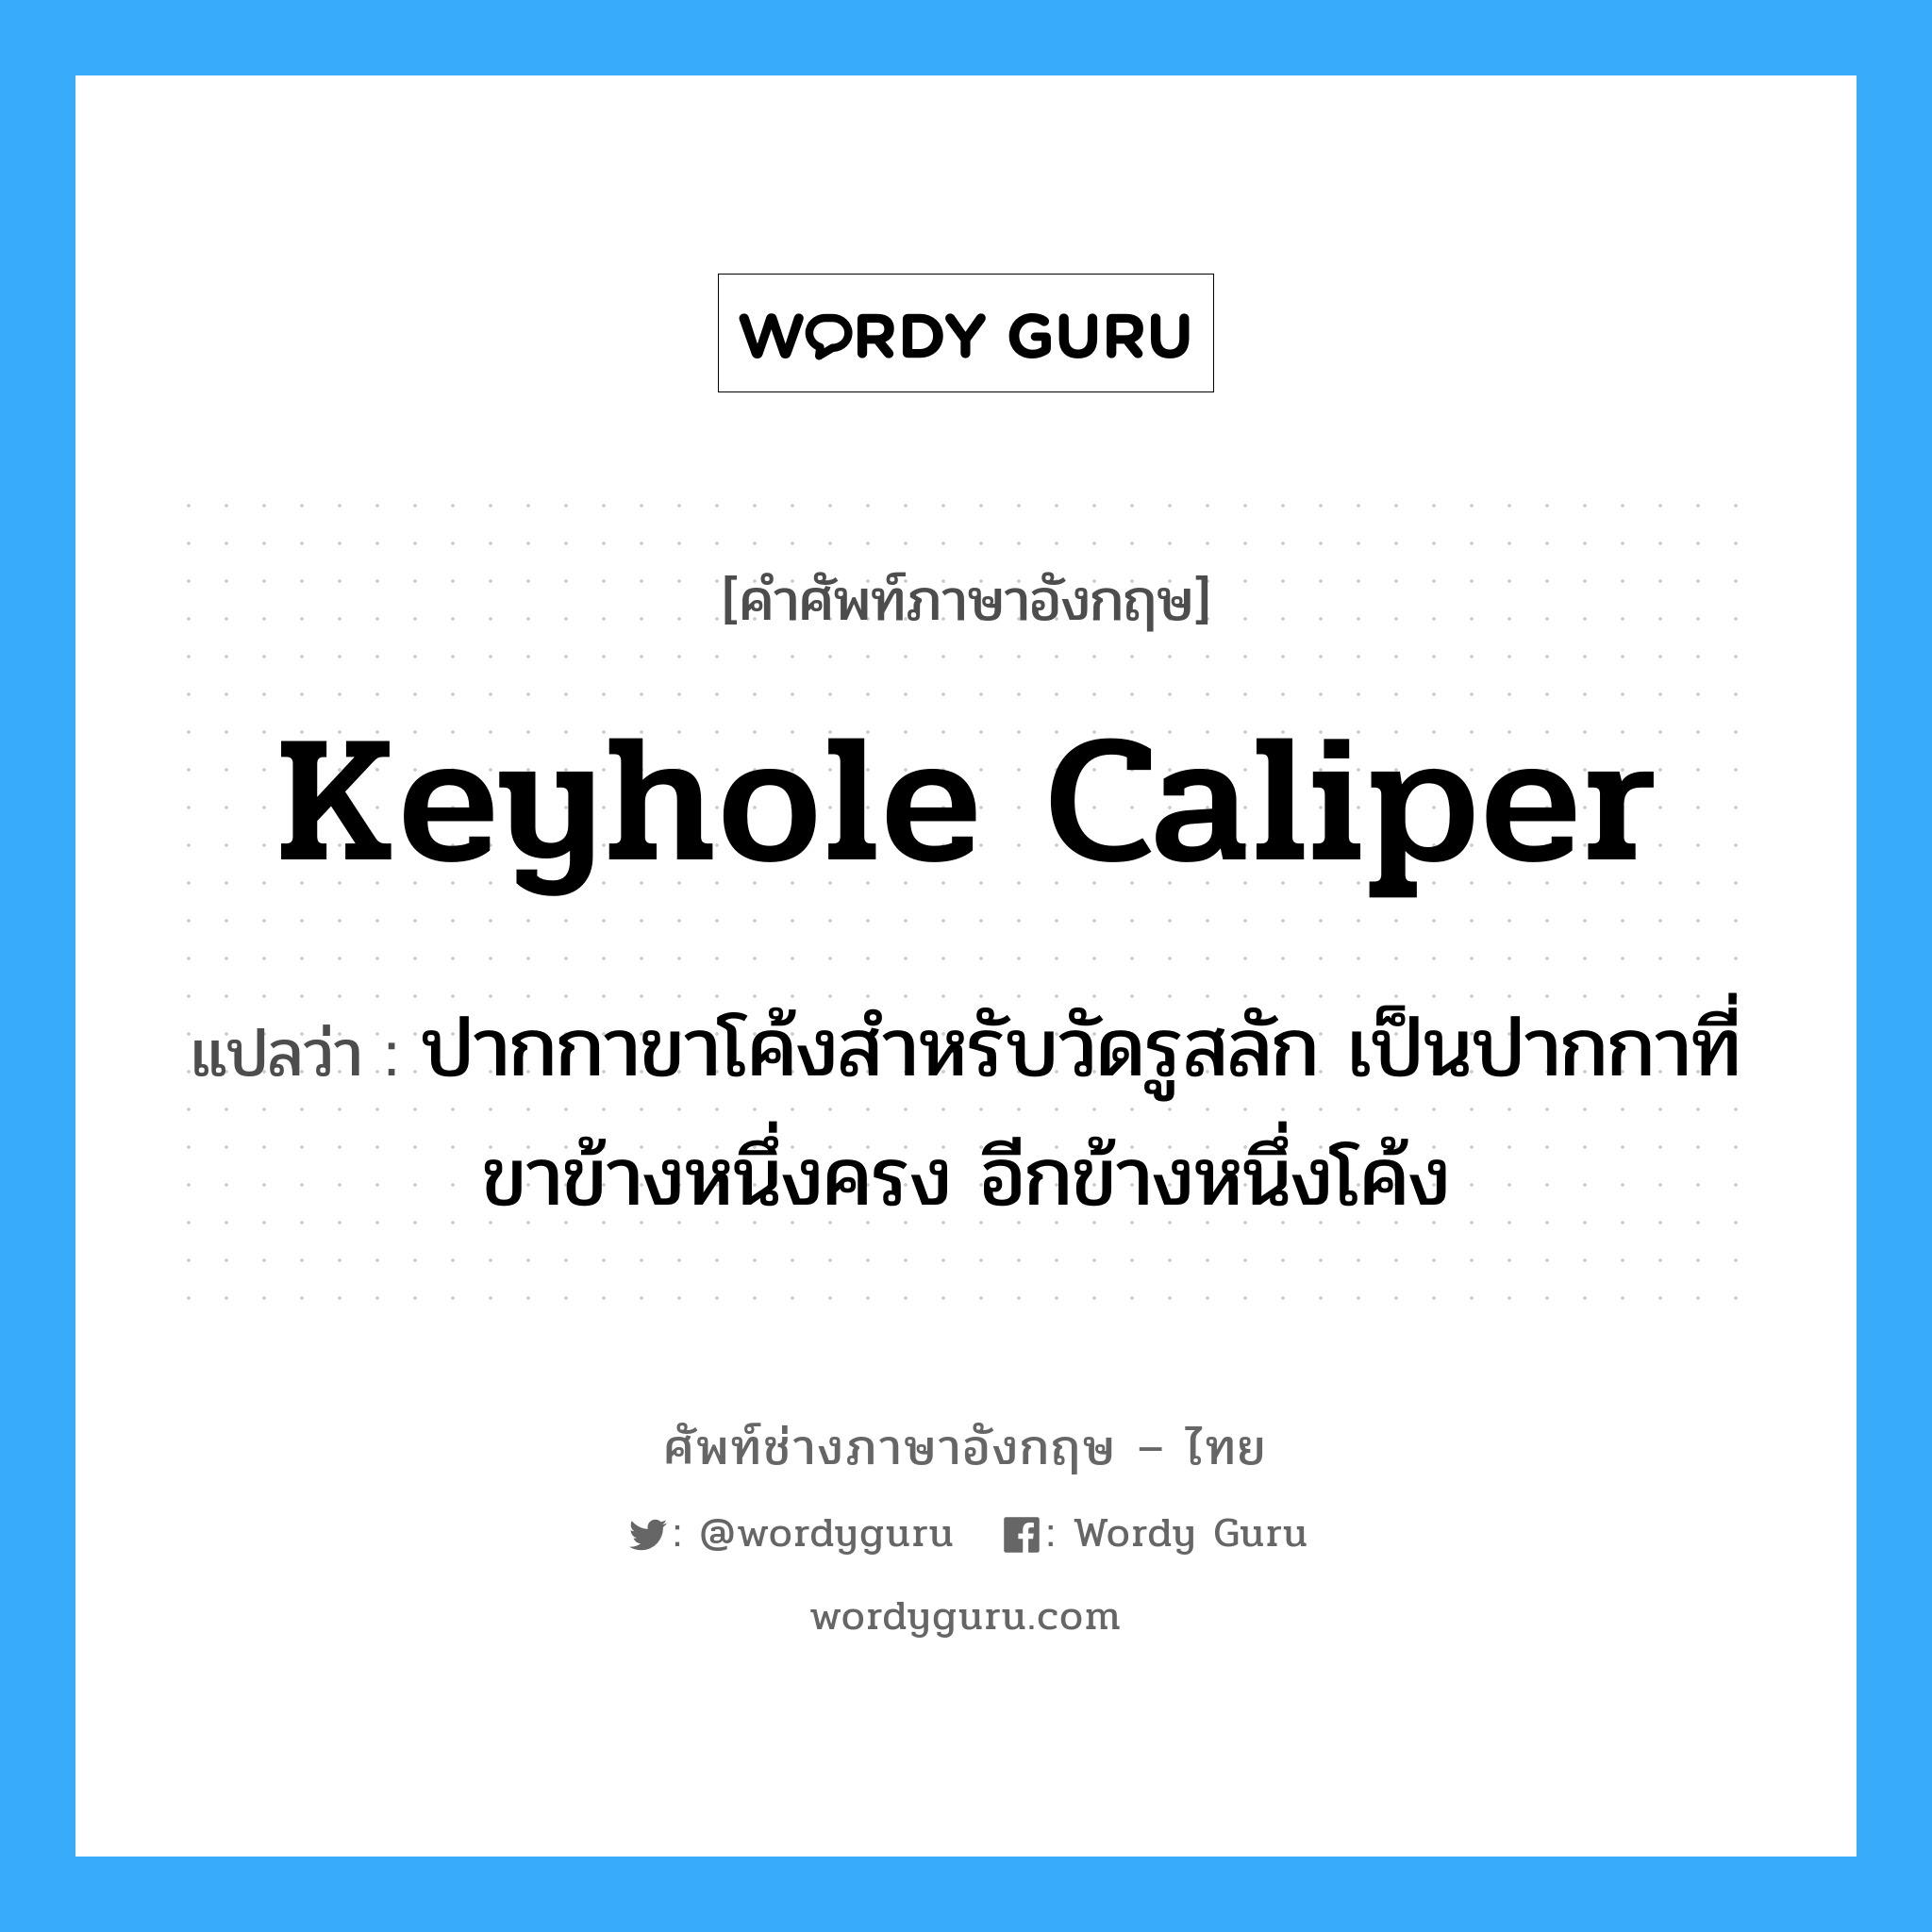 keyhole caliper แปลว่า?, คำศัพท์ช่างภาษาอังกฤษ - ไทย keyhole caliper คำศัพท์ภาษาอังกฤษ keyhole caliper แปลว่า ปากกาขาโค้งสำหรับวัดรูสลัก เป็นปากกาที่ขาข้างหนึ่งครง อีกข้างหนึ่งโค้ง